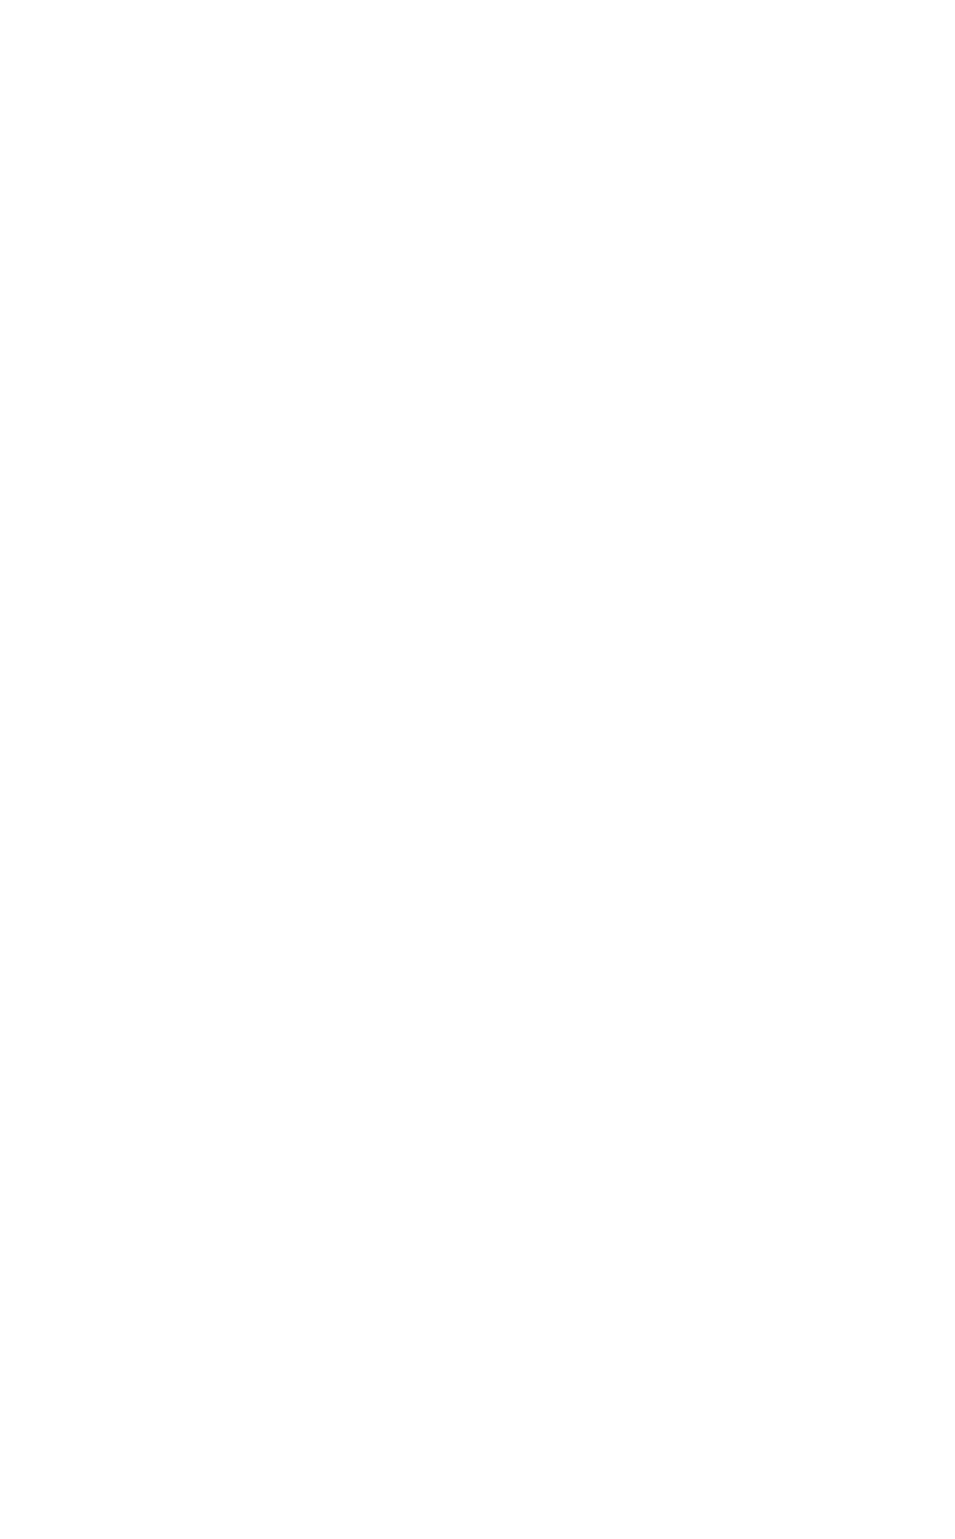 Semapa logo for dark backgrounds (transparent PNG)